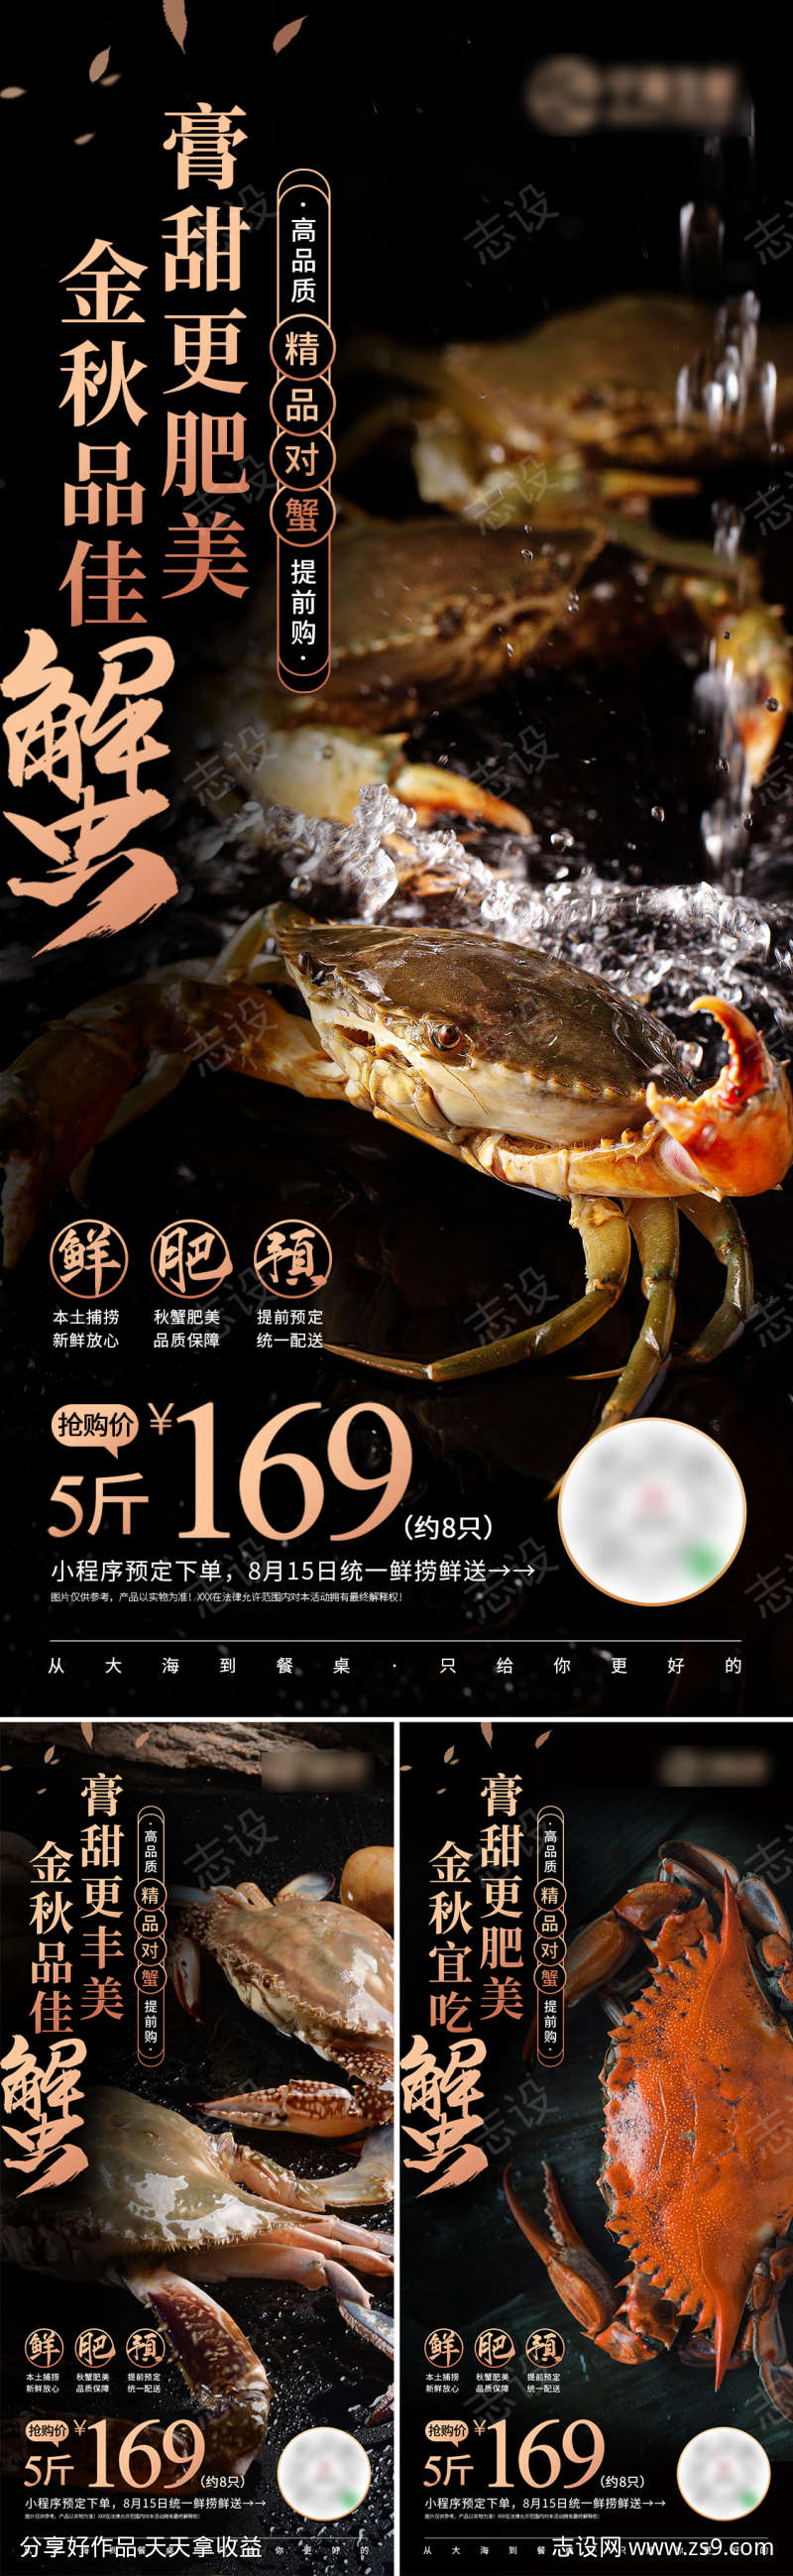 螃蟹促销海报